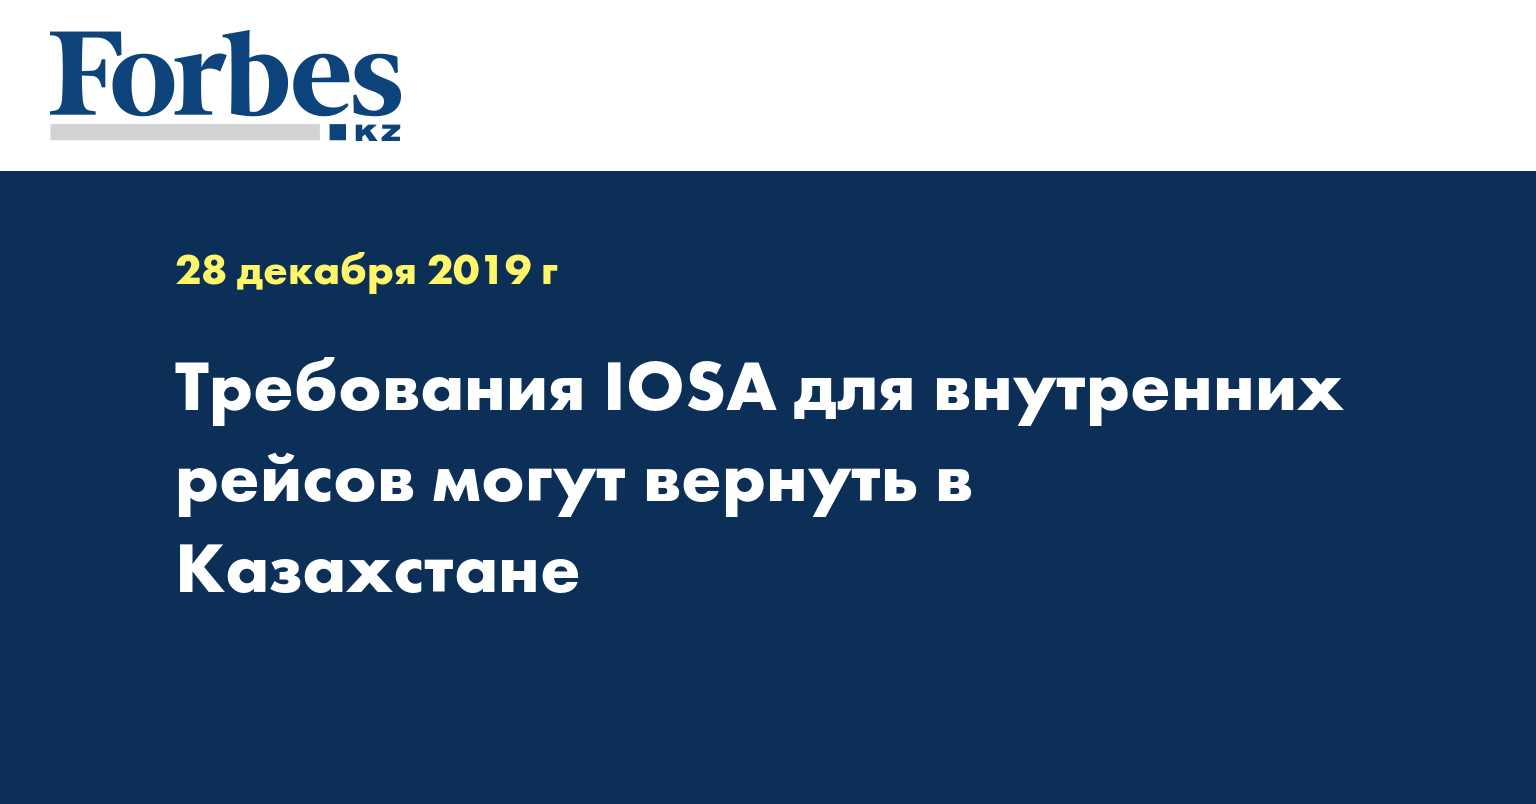 Требования IOSA для внутренних рейсов могут вернуть в Казахстане  